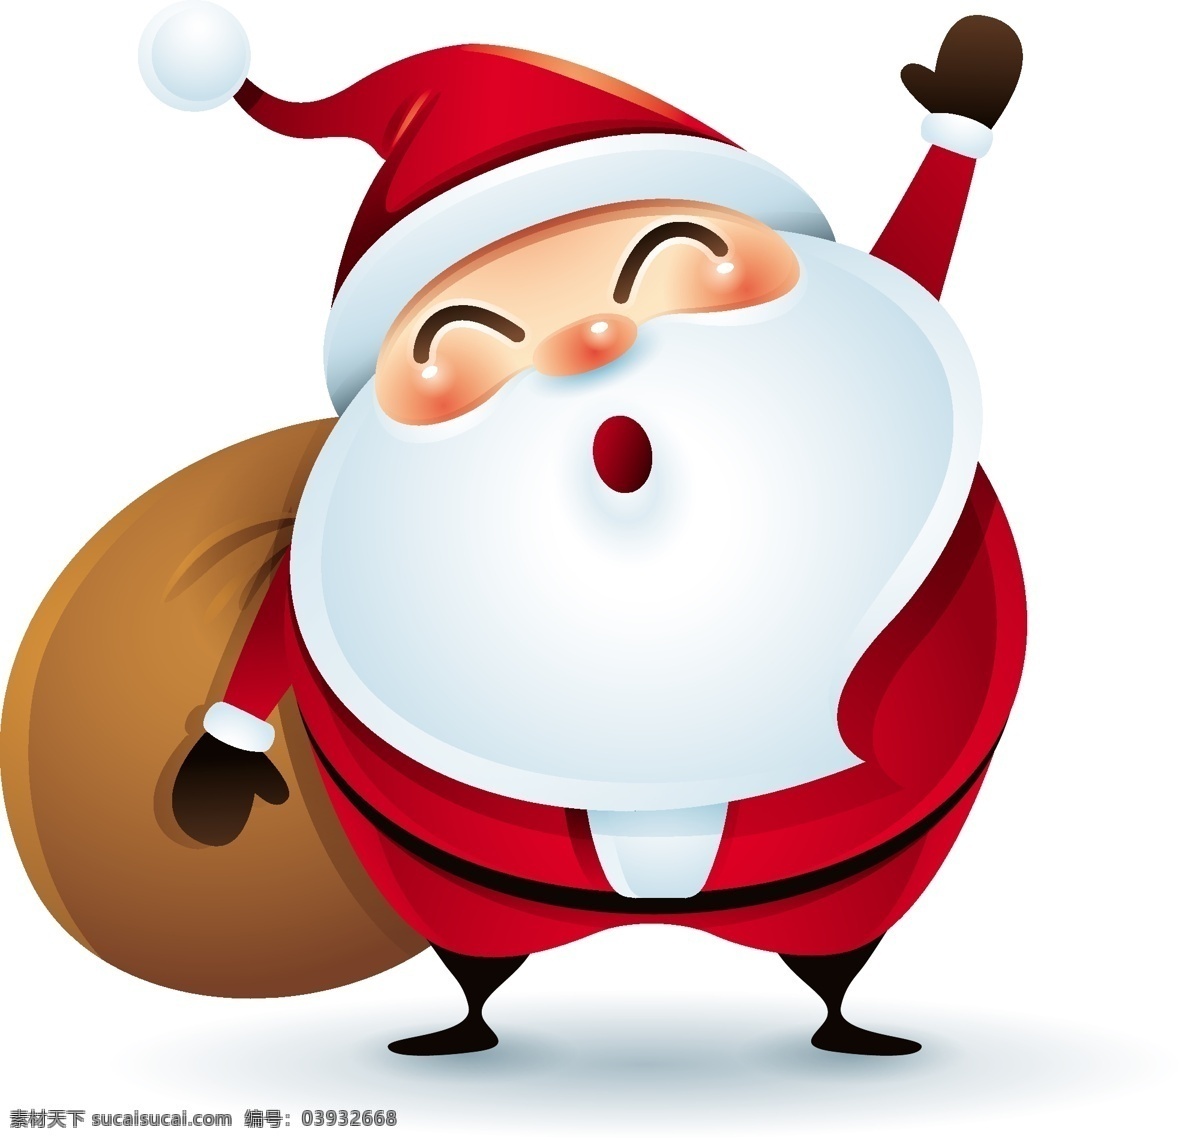 带 礼物 q 版 圣诞节 老人 矢量 举手 可爱 红色 白胡子 卡通 人物 形象 节日 装饰